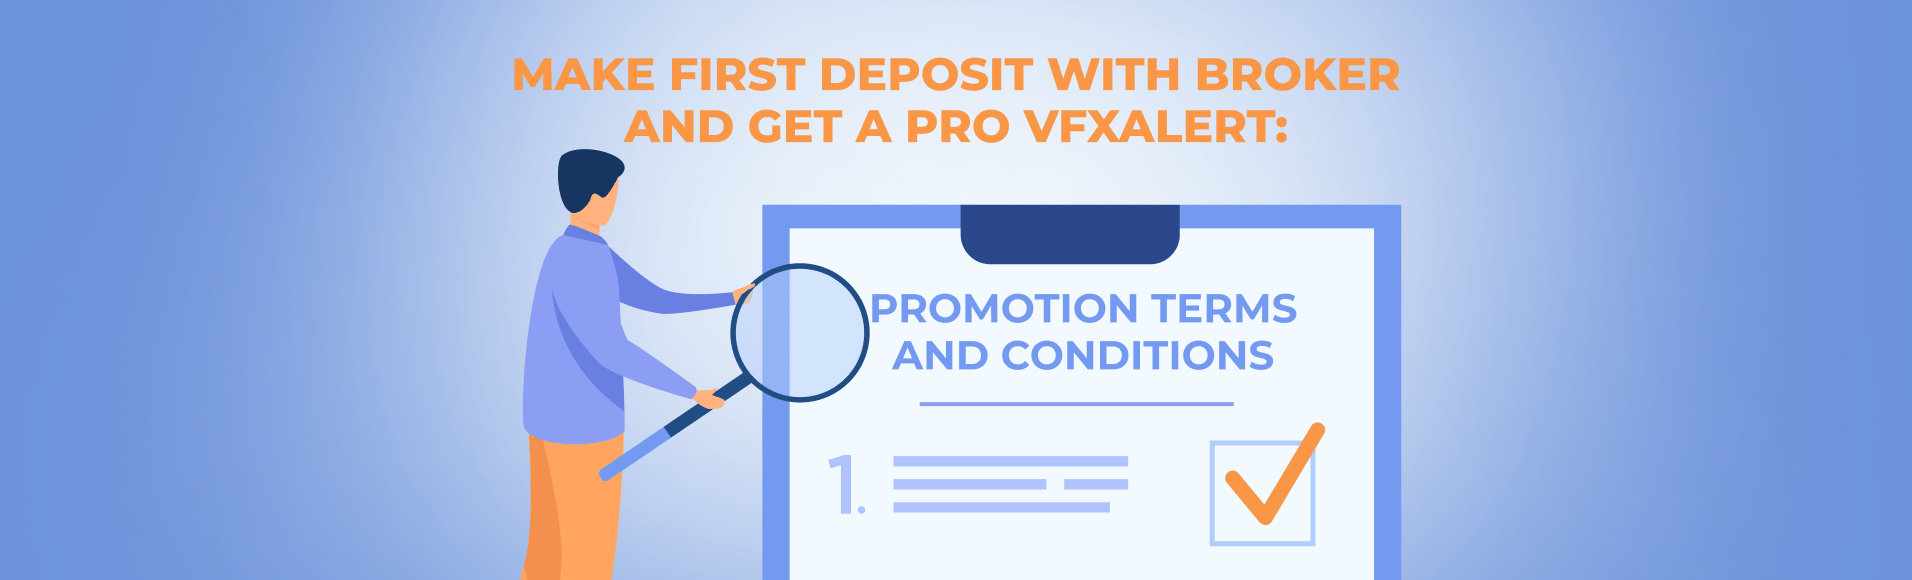 Broker ile İlk para yatırma işlemini yapın ve bir PRO vfxAlert alın: Promosyon Hüküm ve Koşulları.